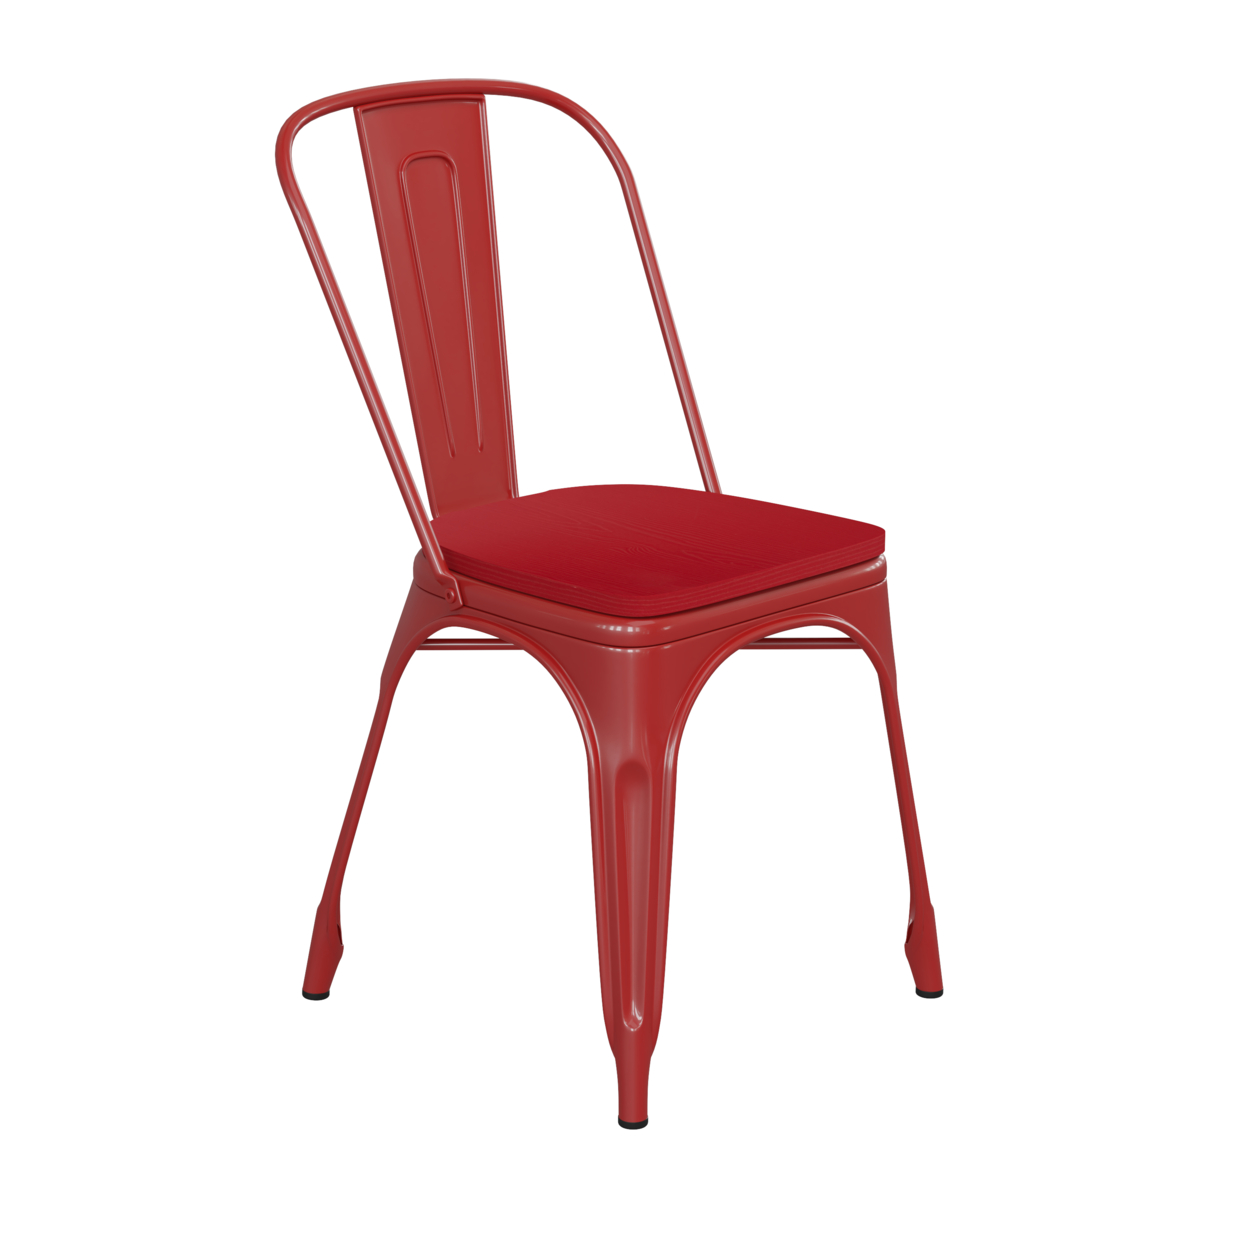 Metal Chair, Curved Design Back, Polyresin Sleek Seat, Maroon